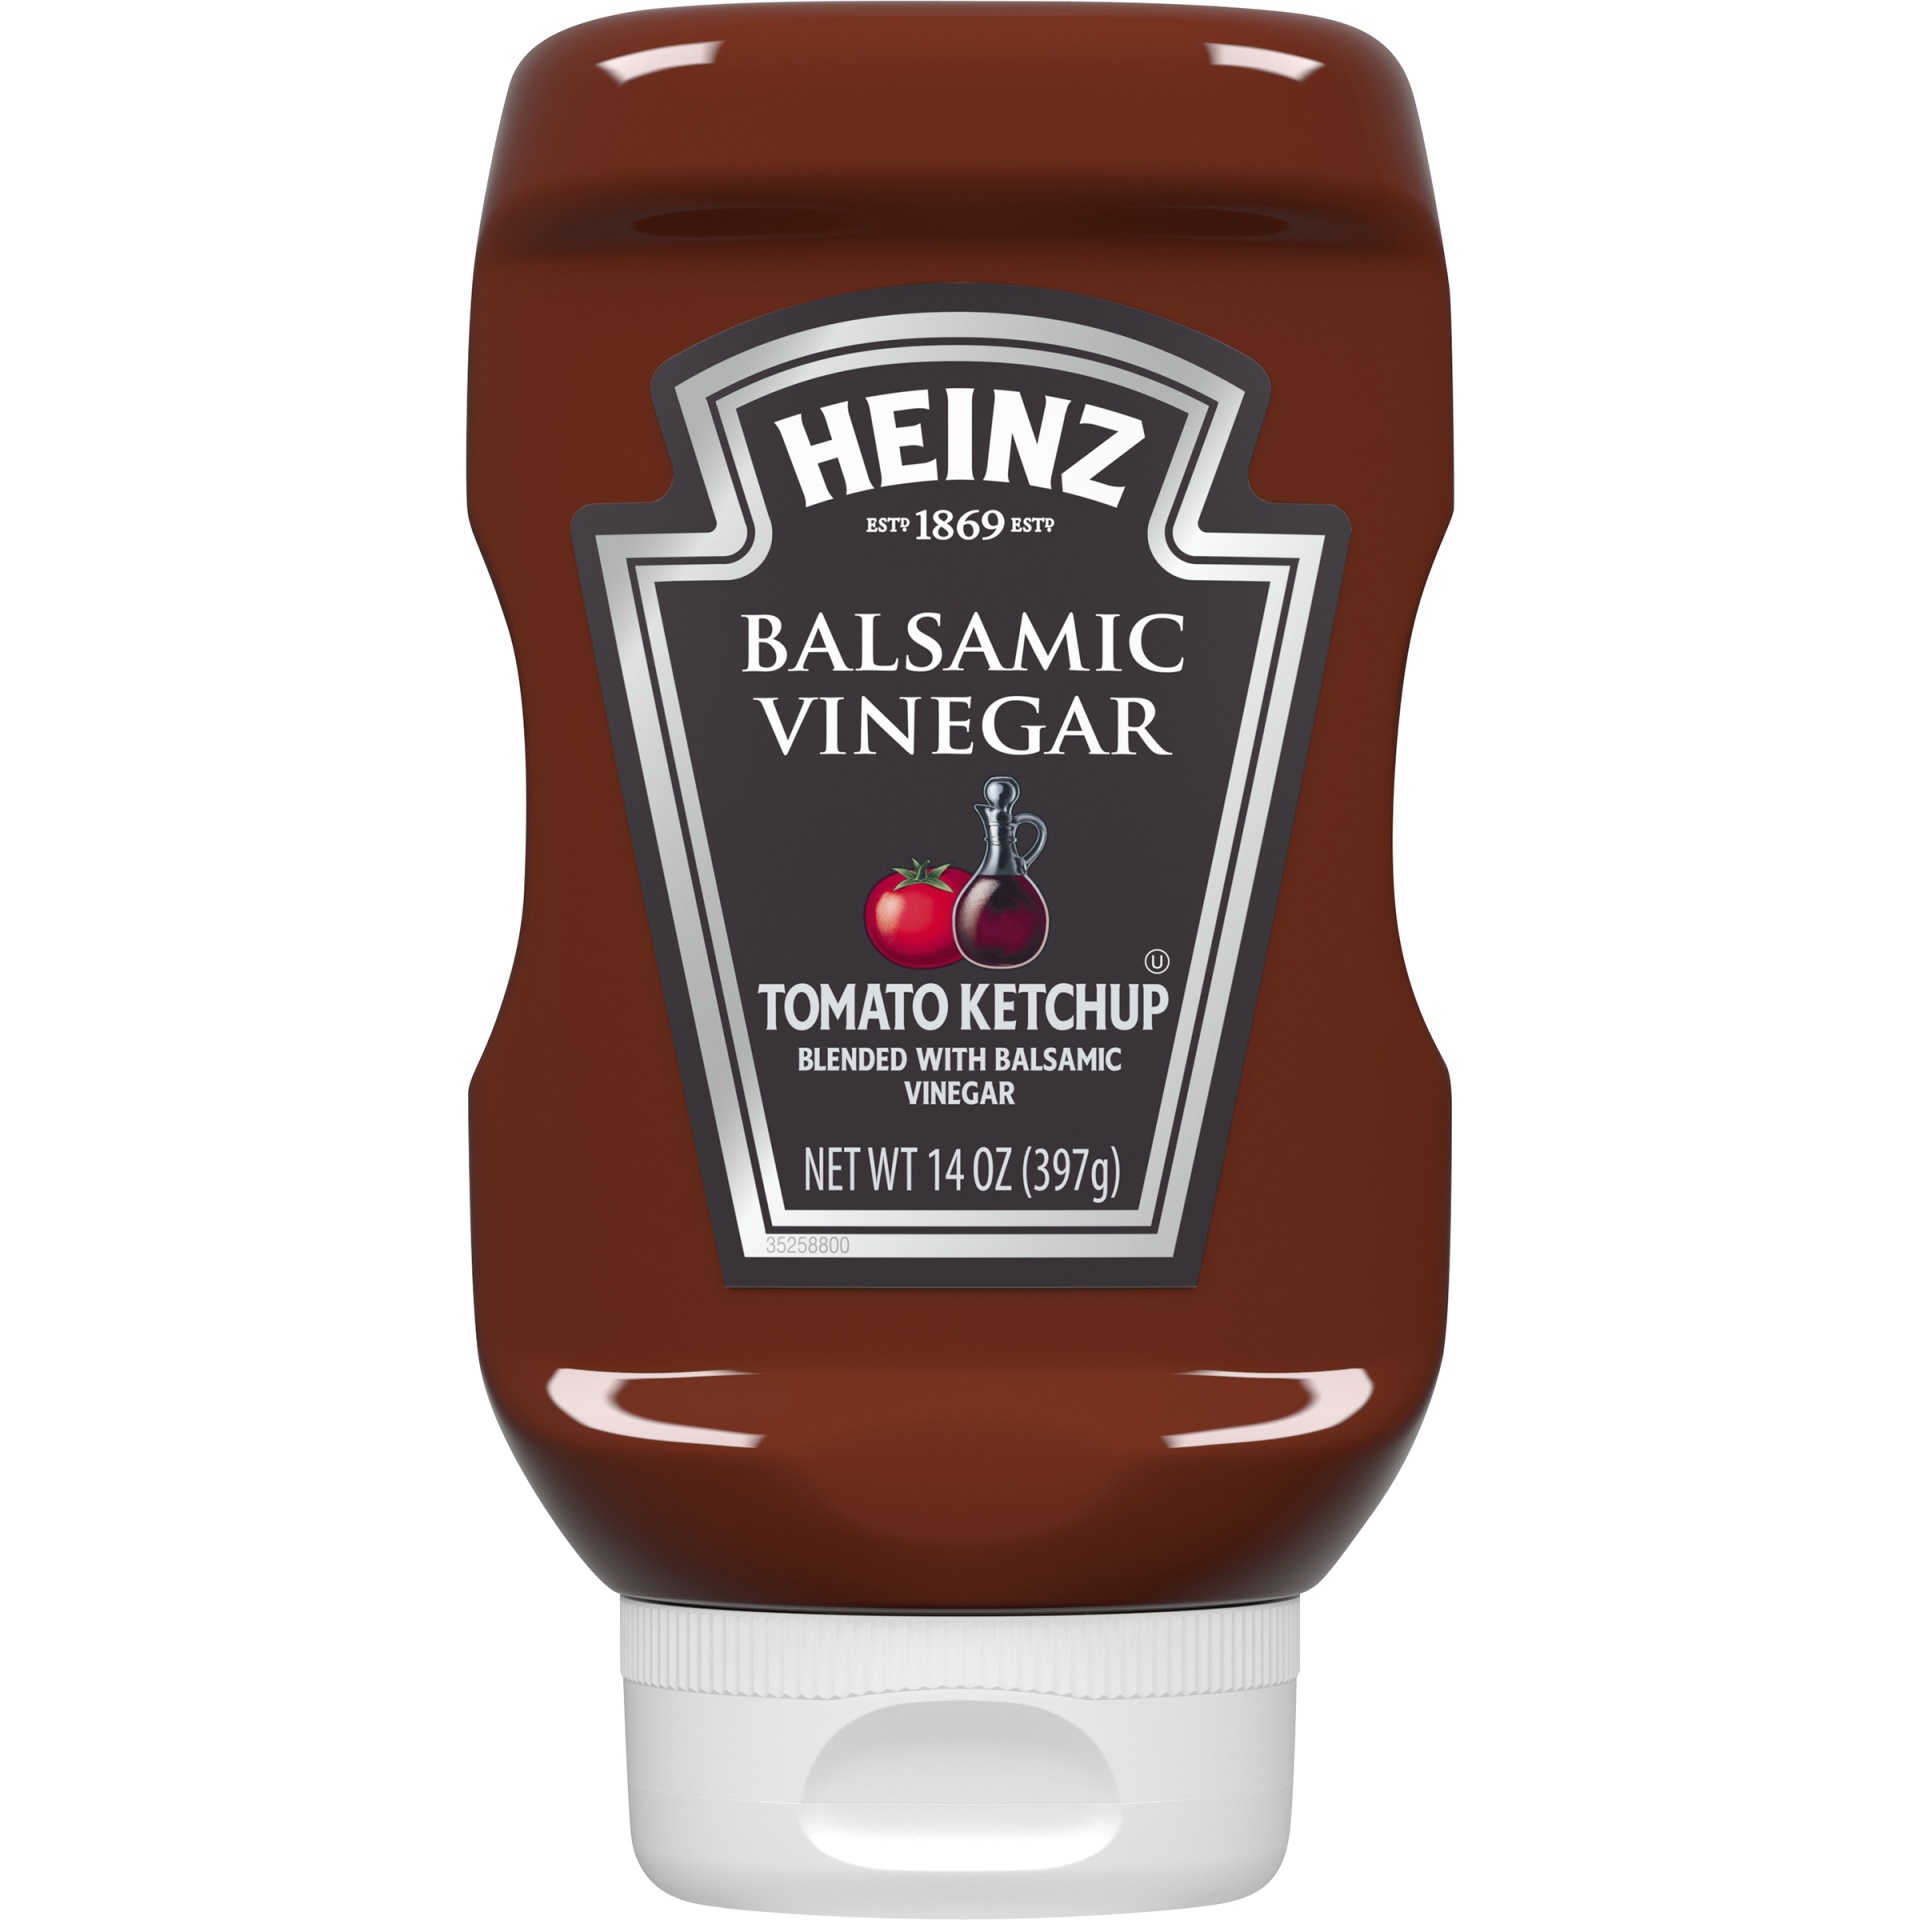 slide 1 of 1, Heinz Balsamic Vinegar Tomato Ketchup, 14 oz